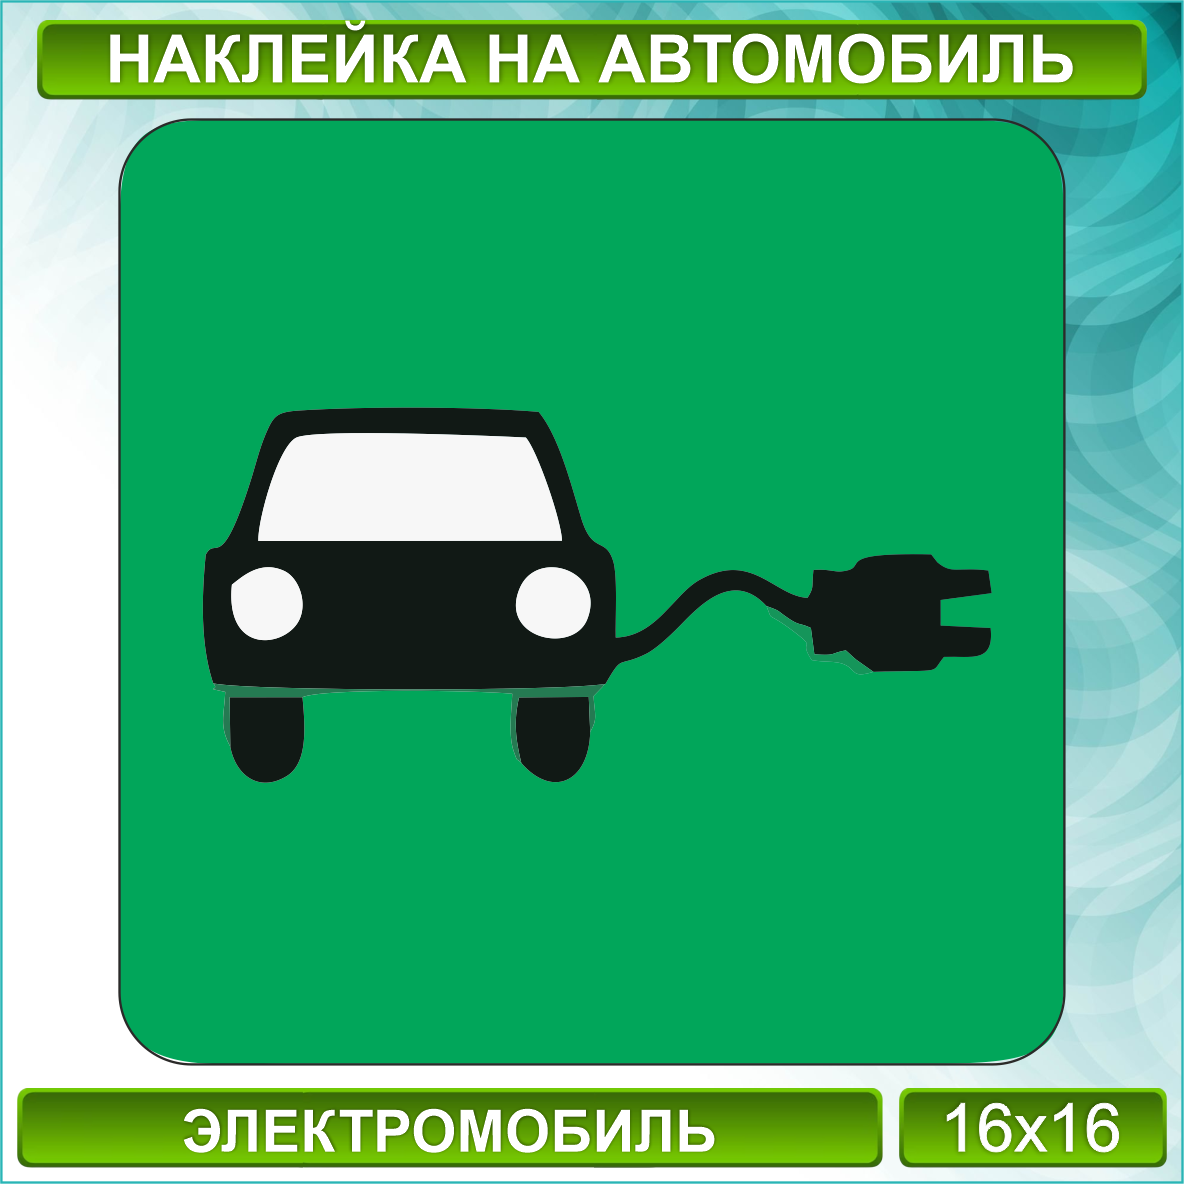 Наклейка на авто знак "Электромобиль"